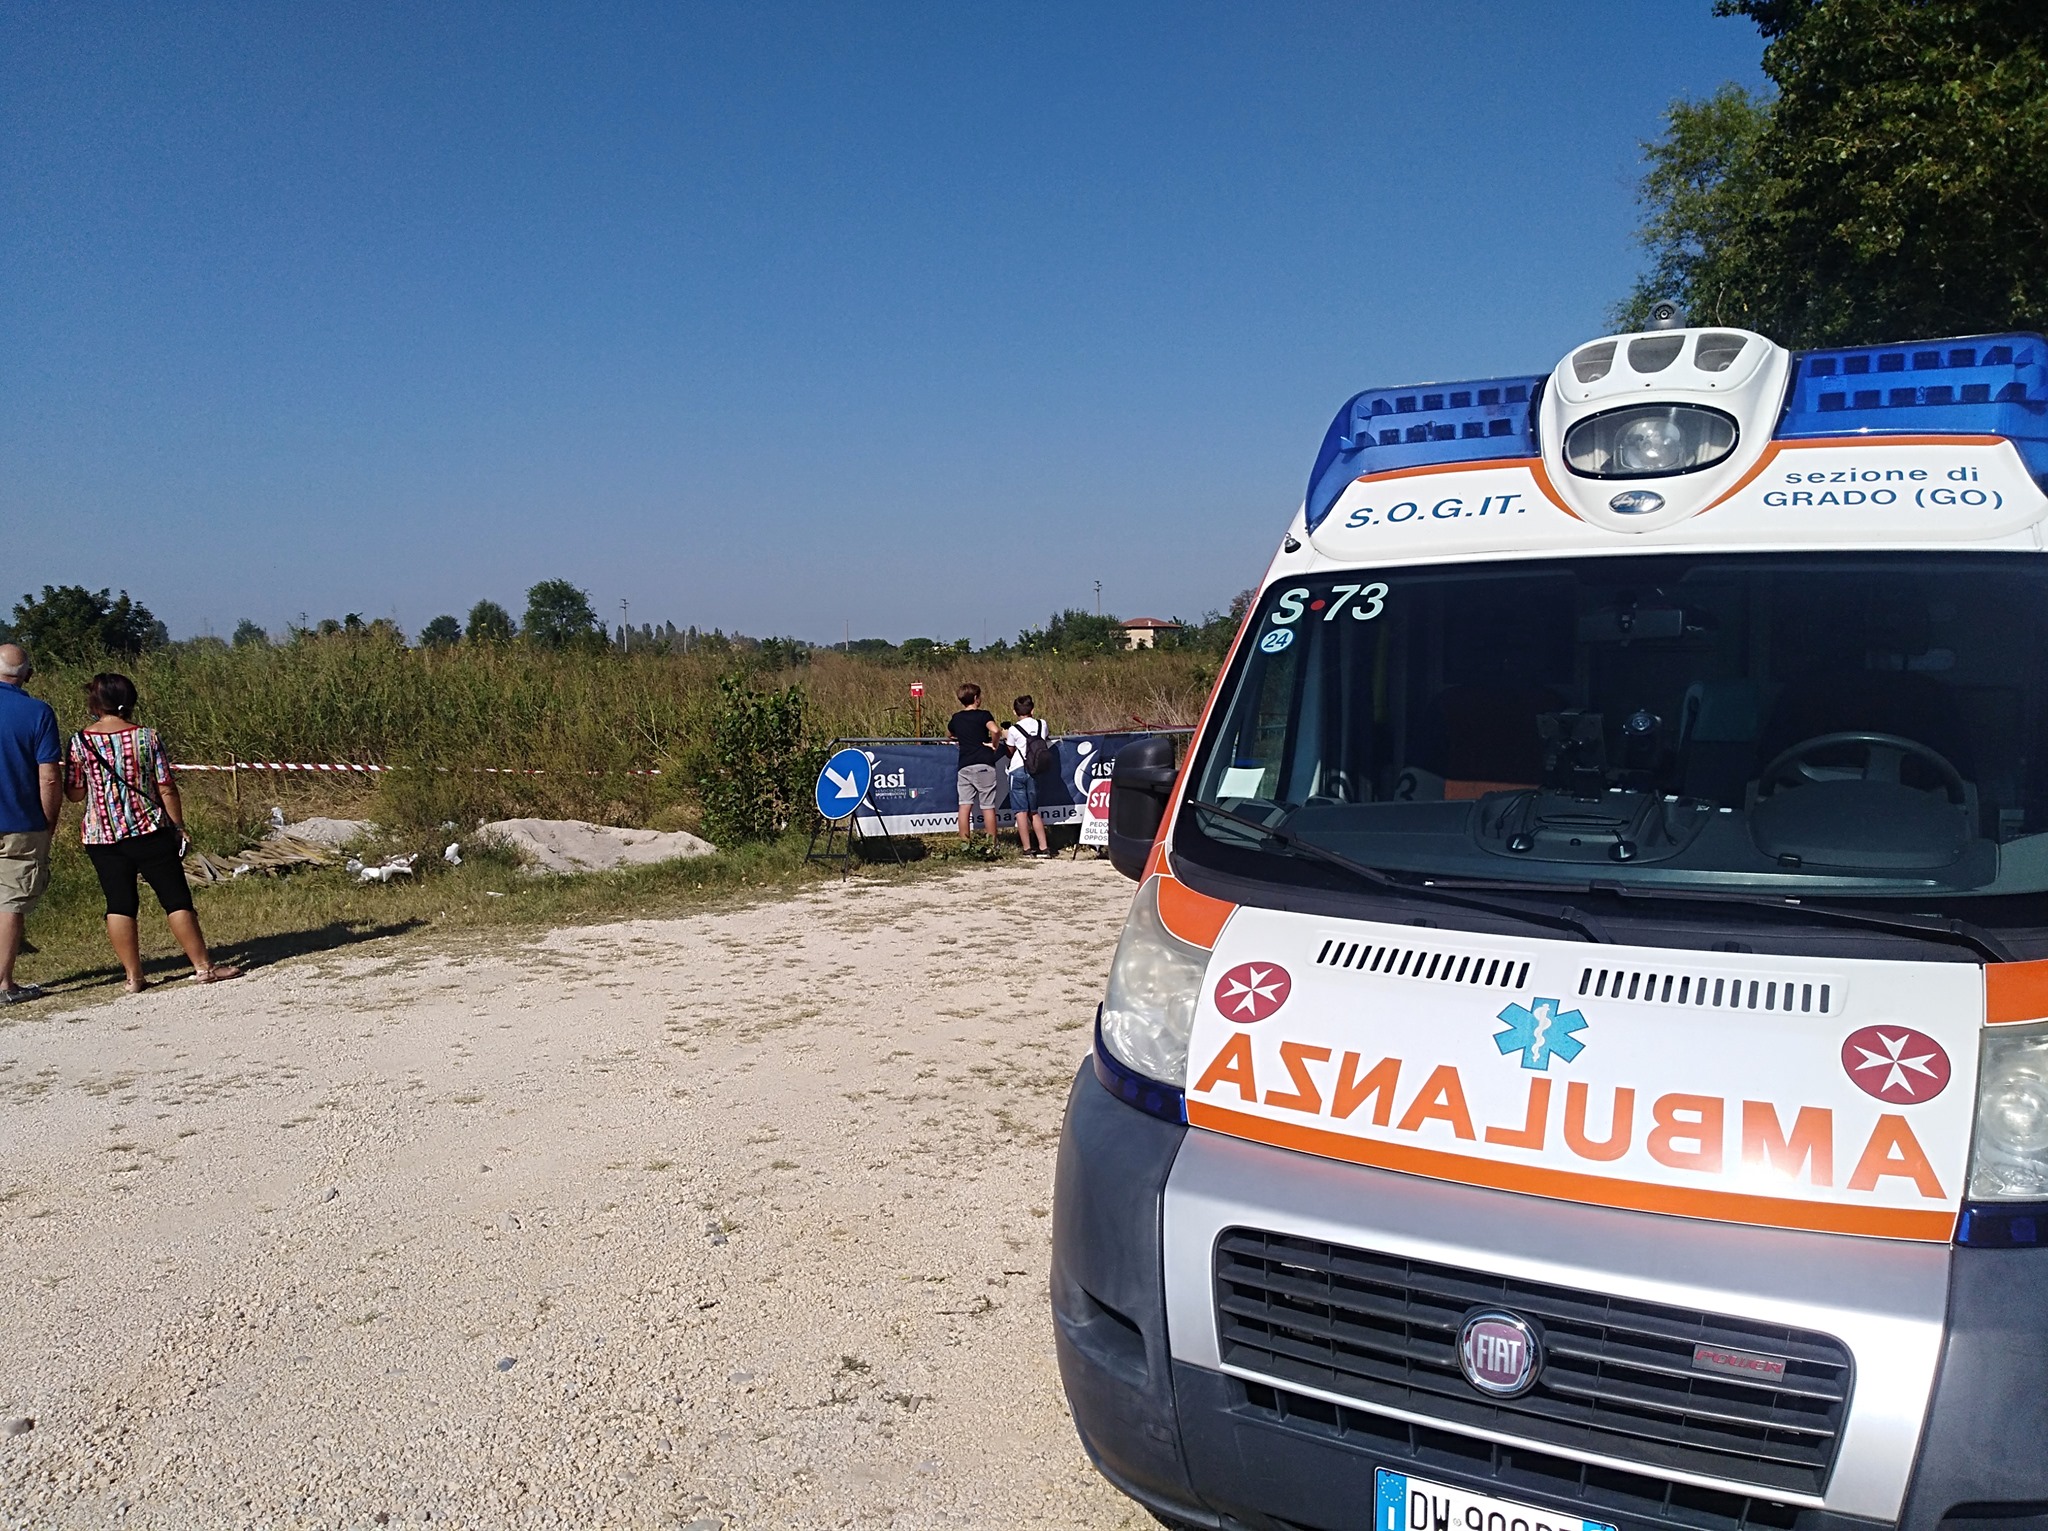 Immagine per Ambulanza a Grado, servizio d'urgenza sull'isola attivo 24 ore su 24